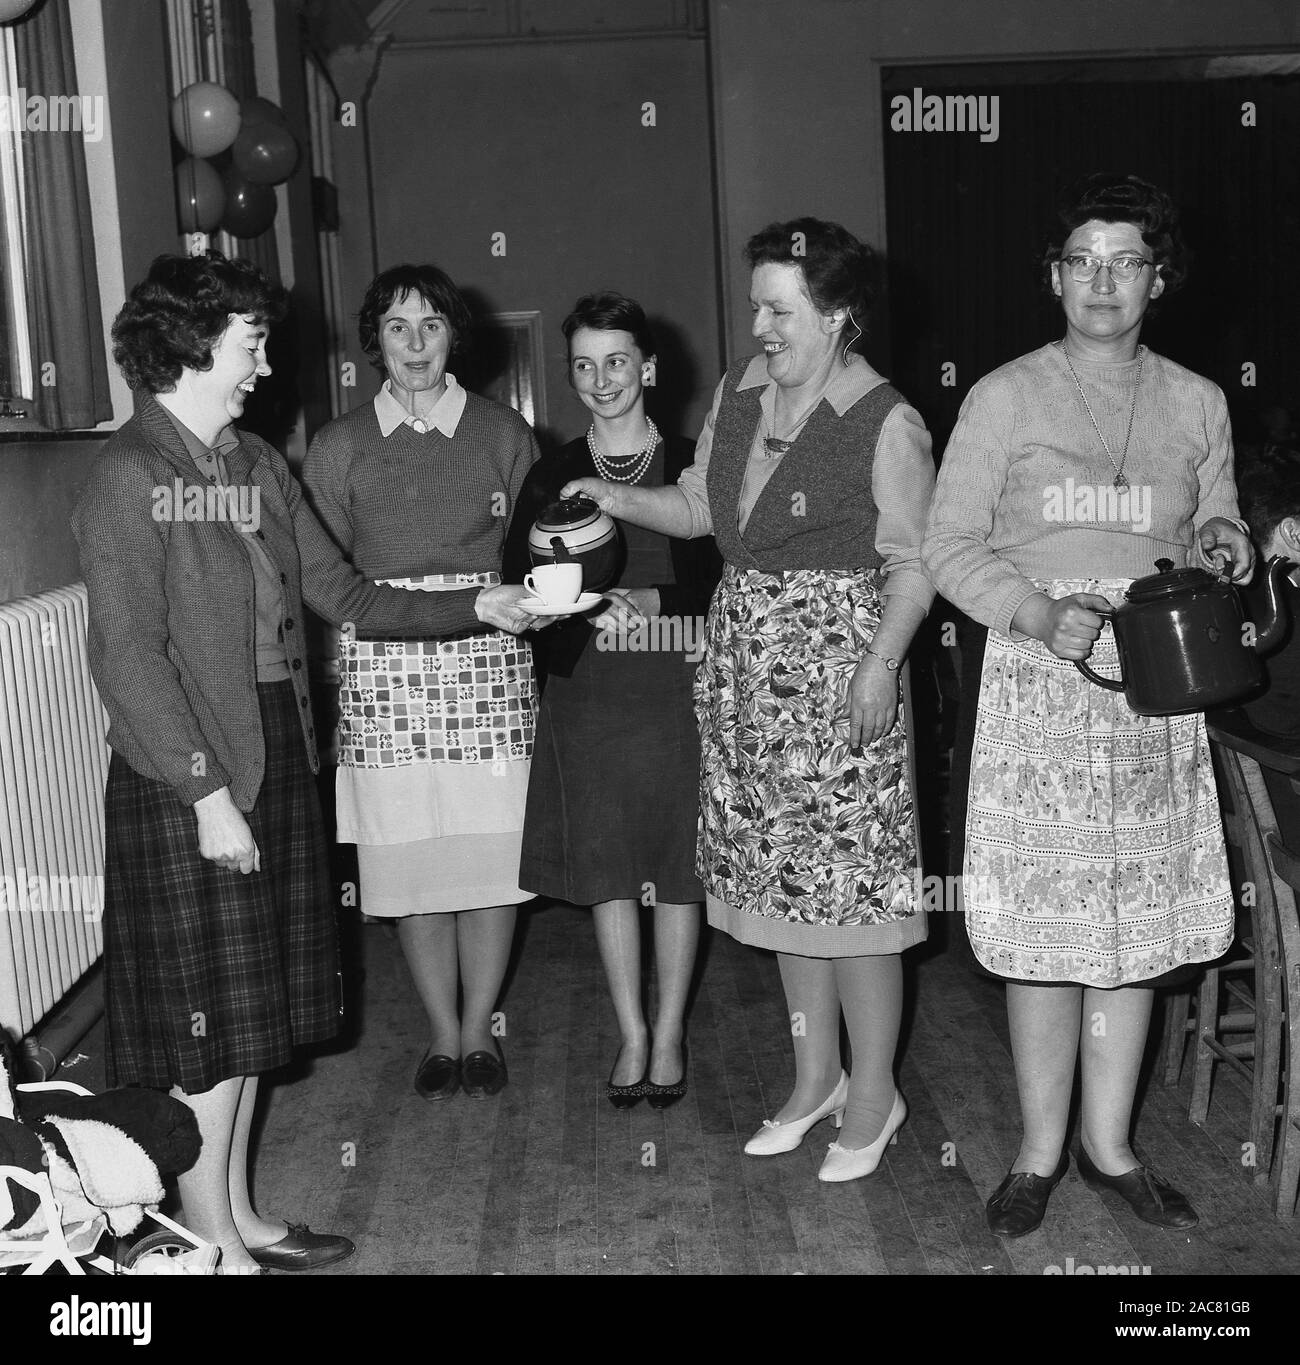 1960, historische, zwei Damen in Schürzen gießen Tee für Ihre weiblichen Gäste an einer Partei, England, UK. Stockfoto